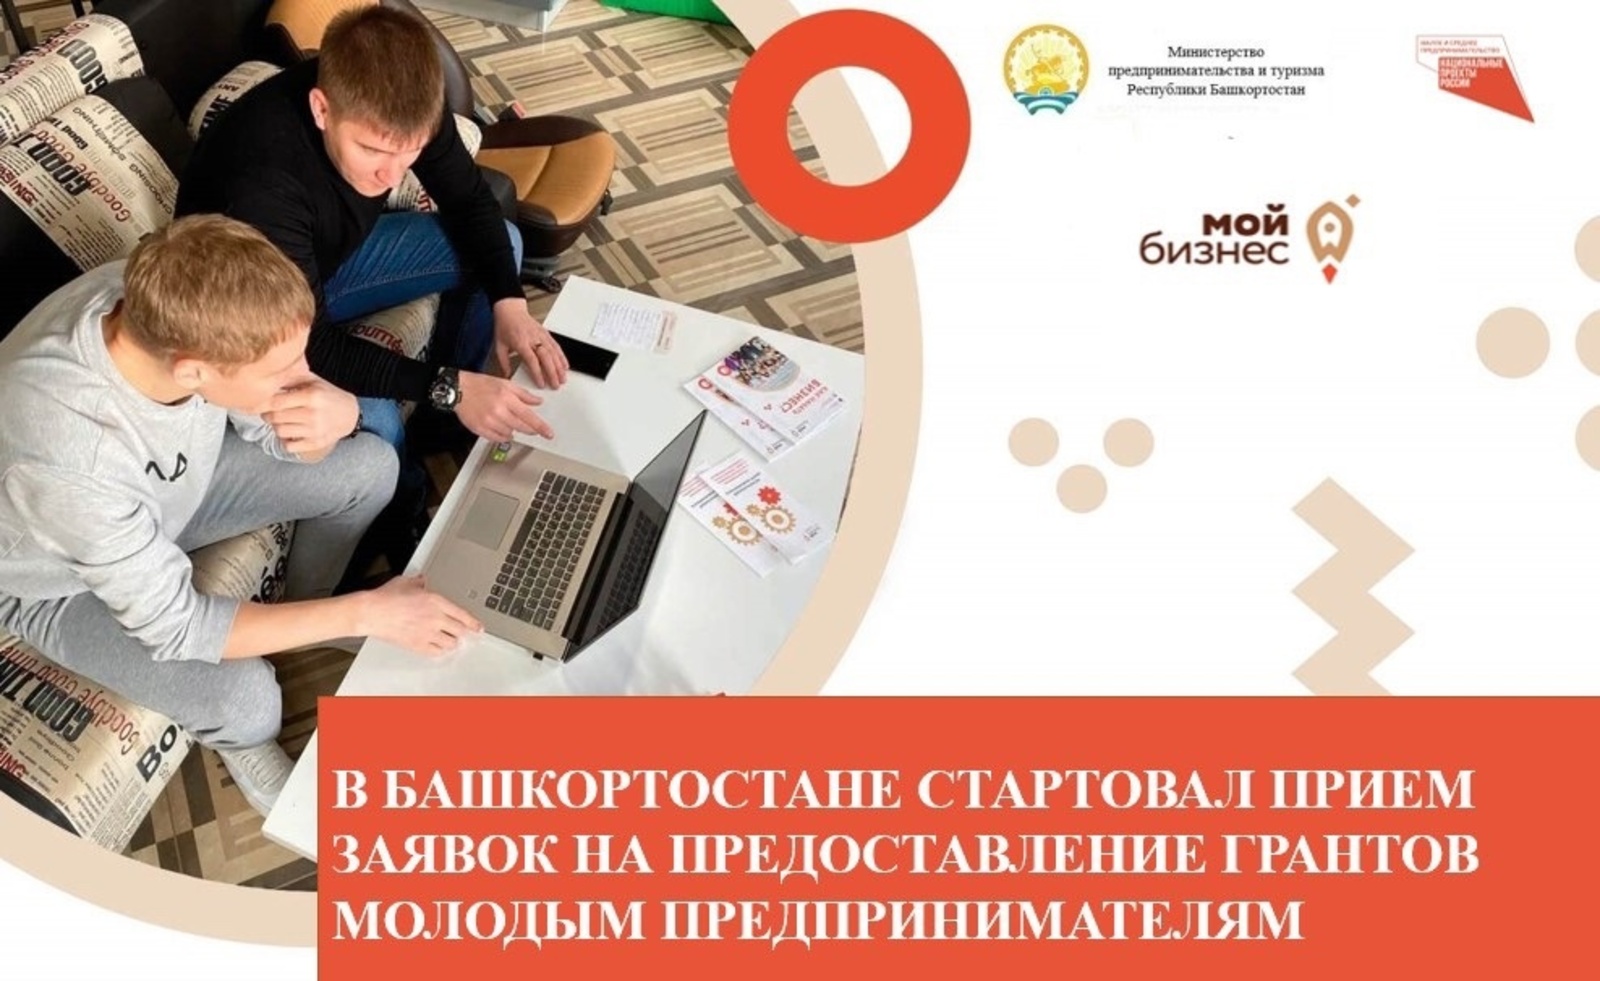 Молодые предприниматели Башкирии могут получить гранты до 500 тысяч рублей на развитие своего дела